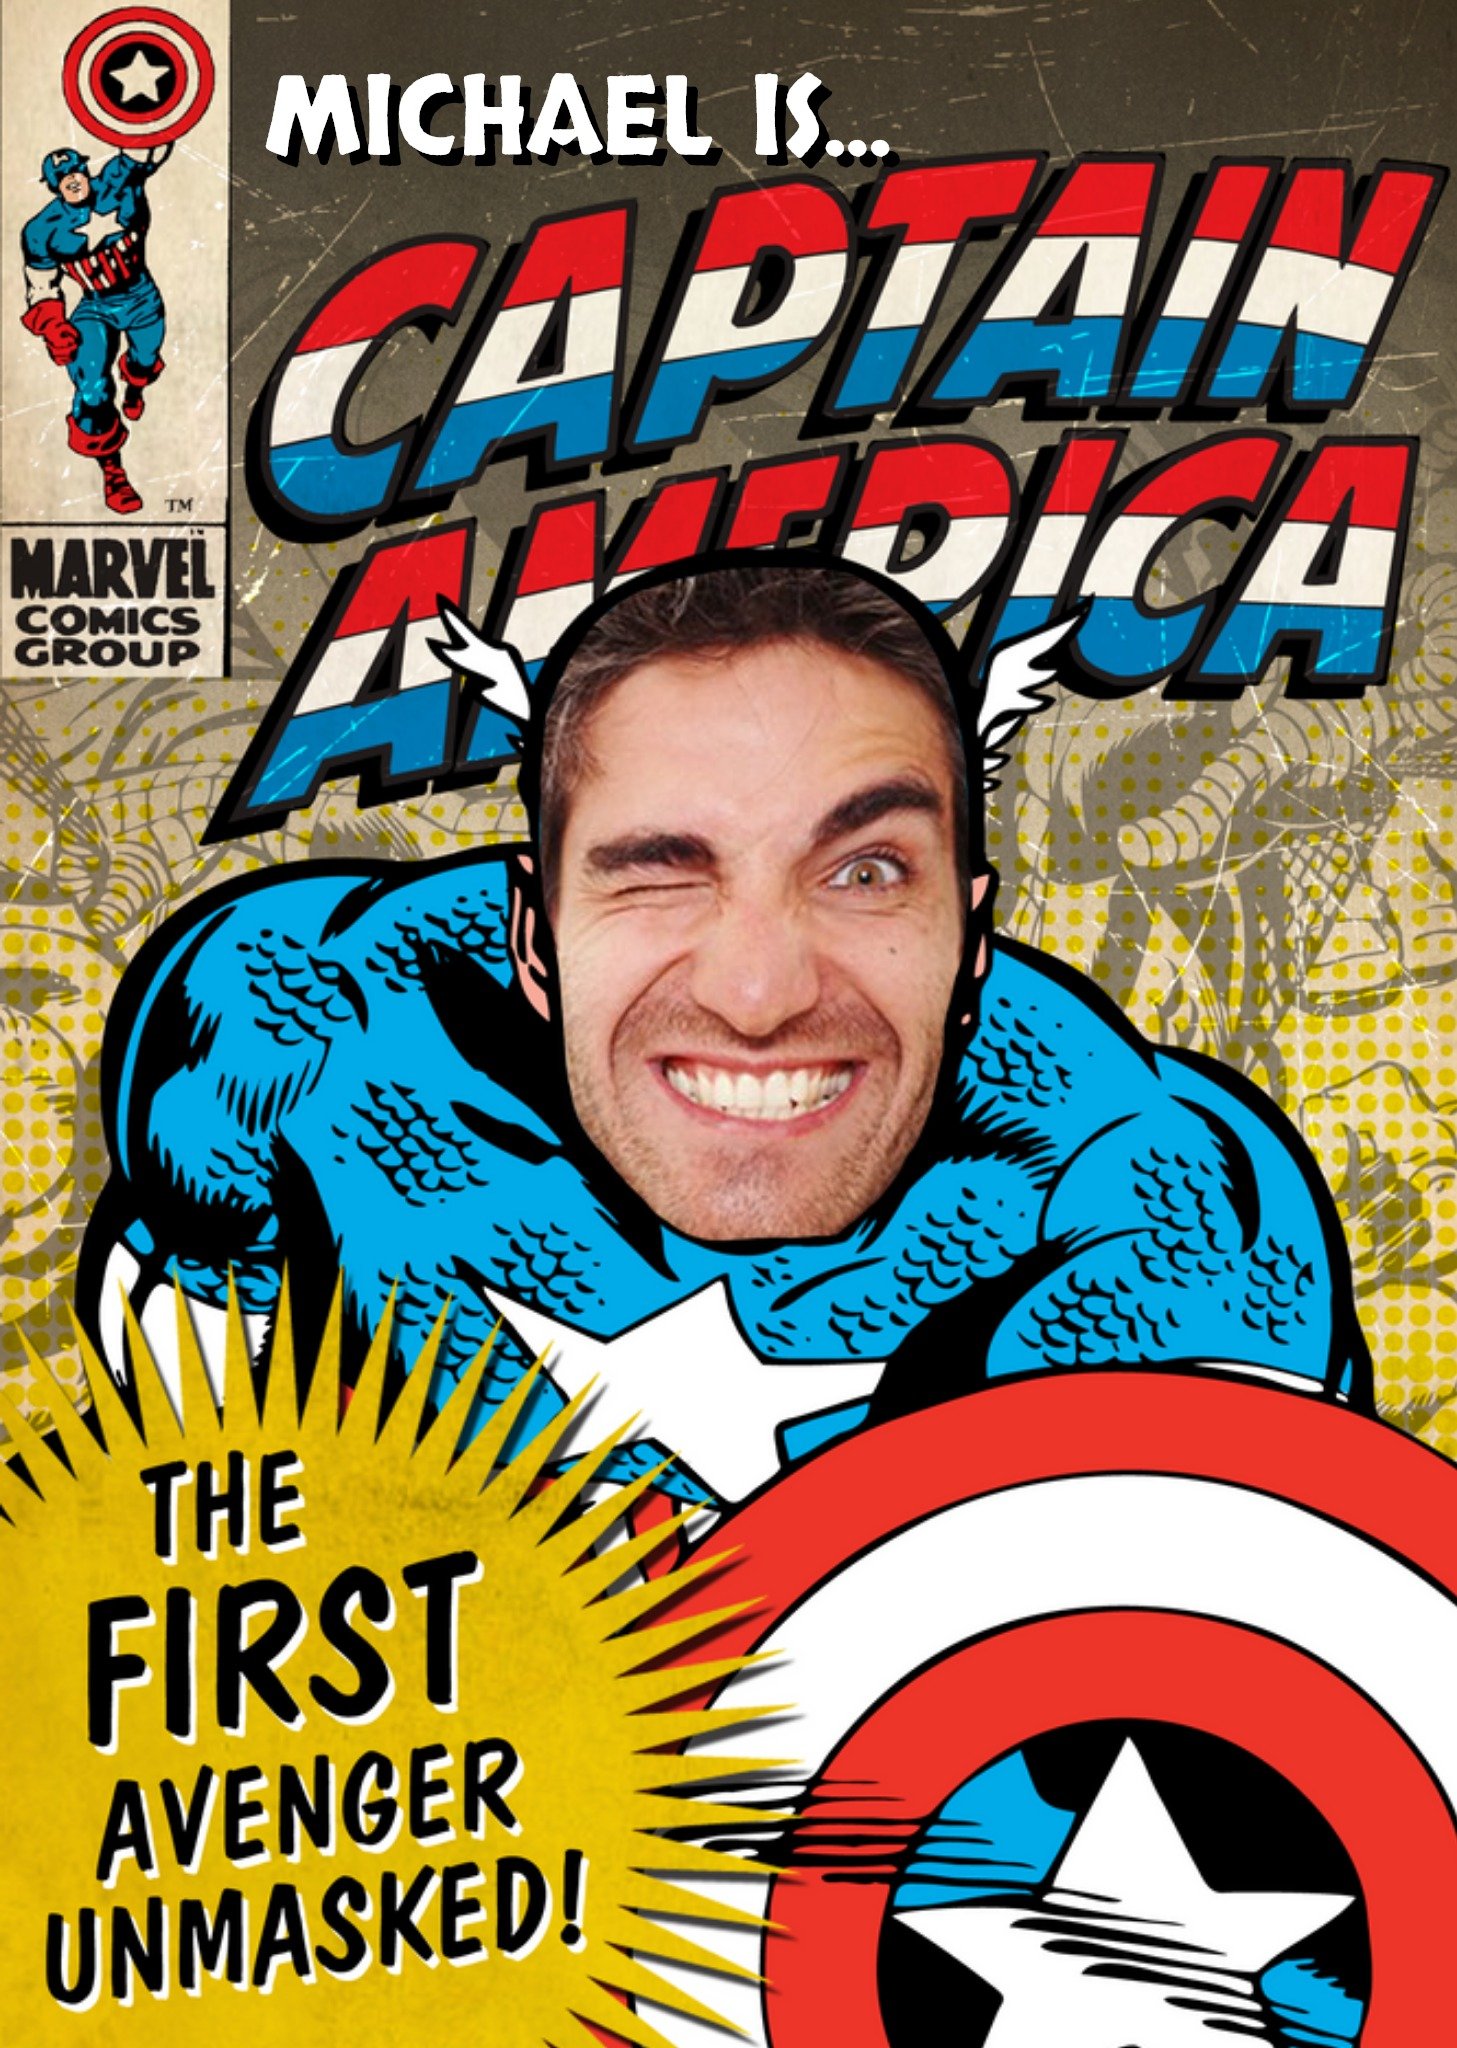 Disney Captain America Face Photo Card Ecard